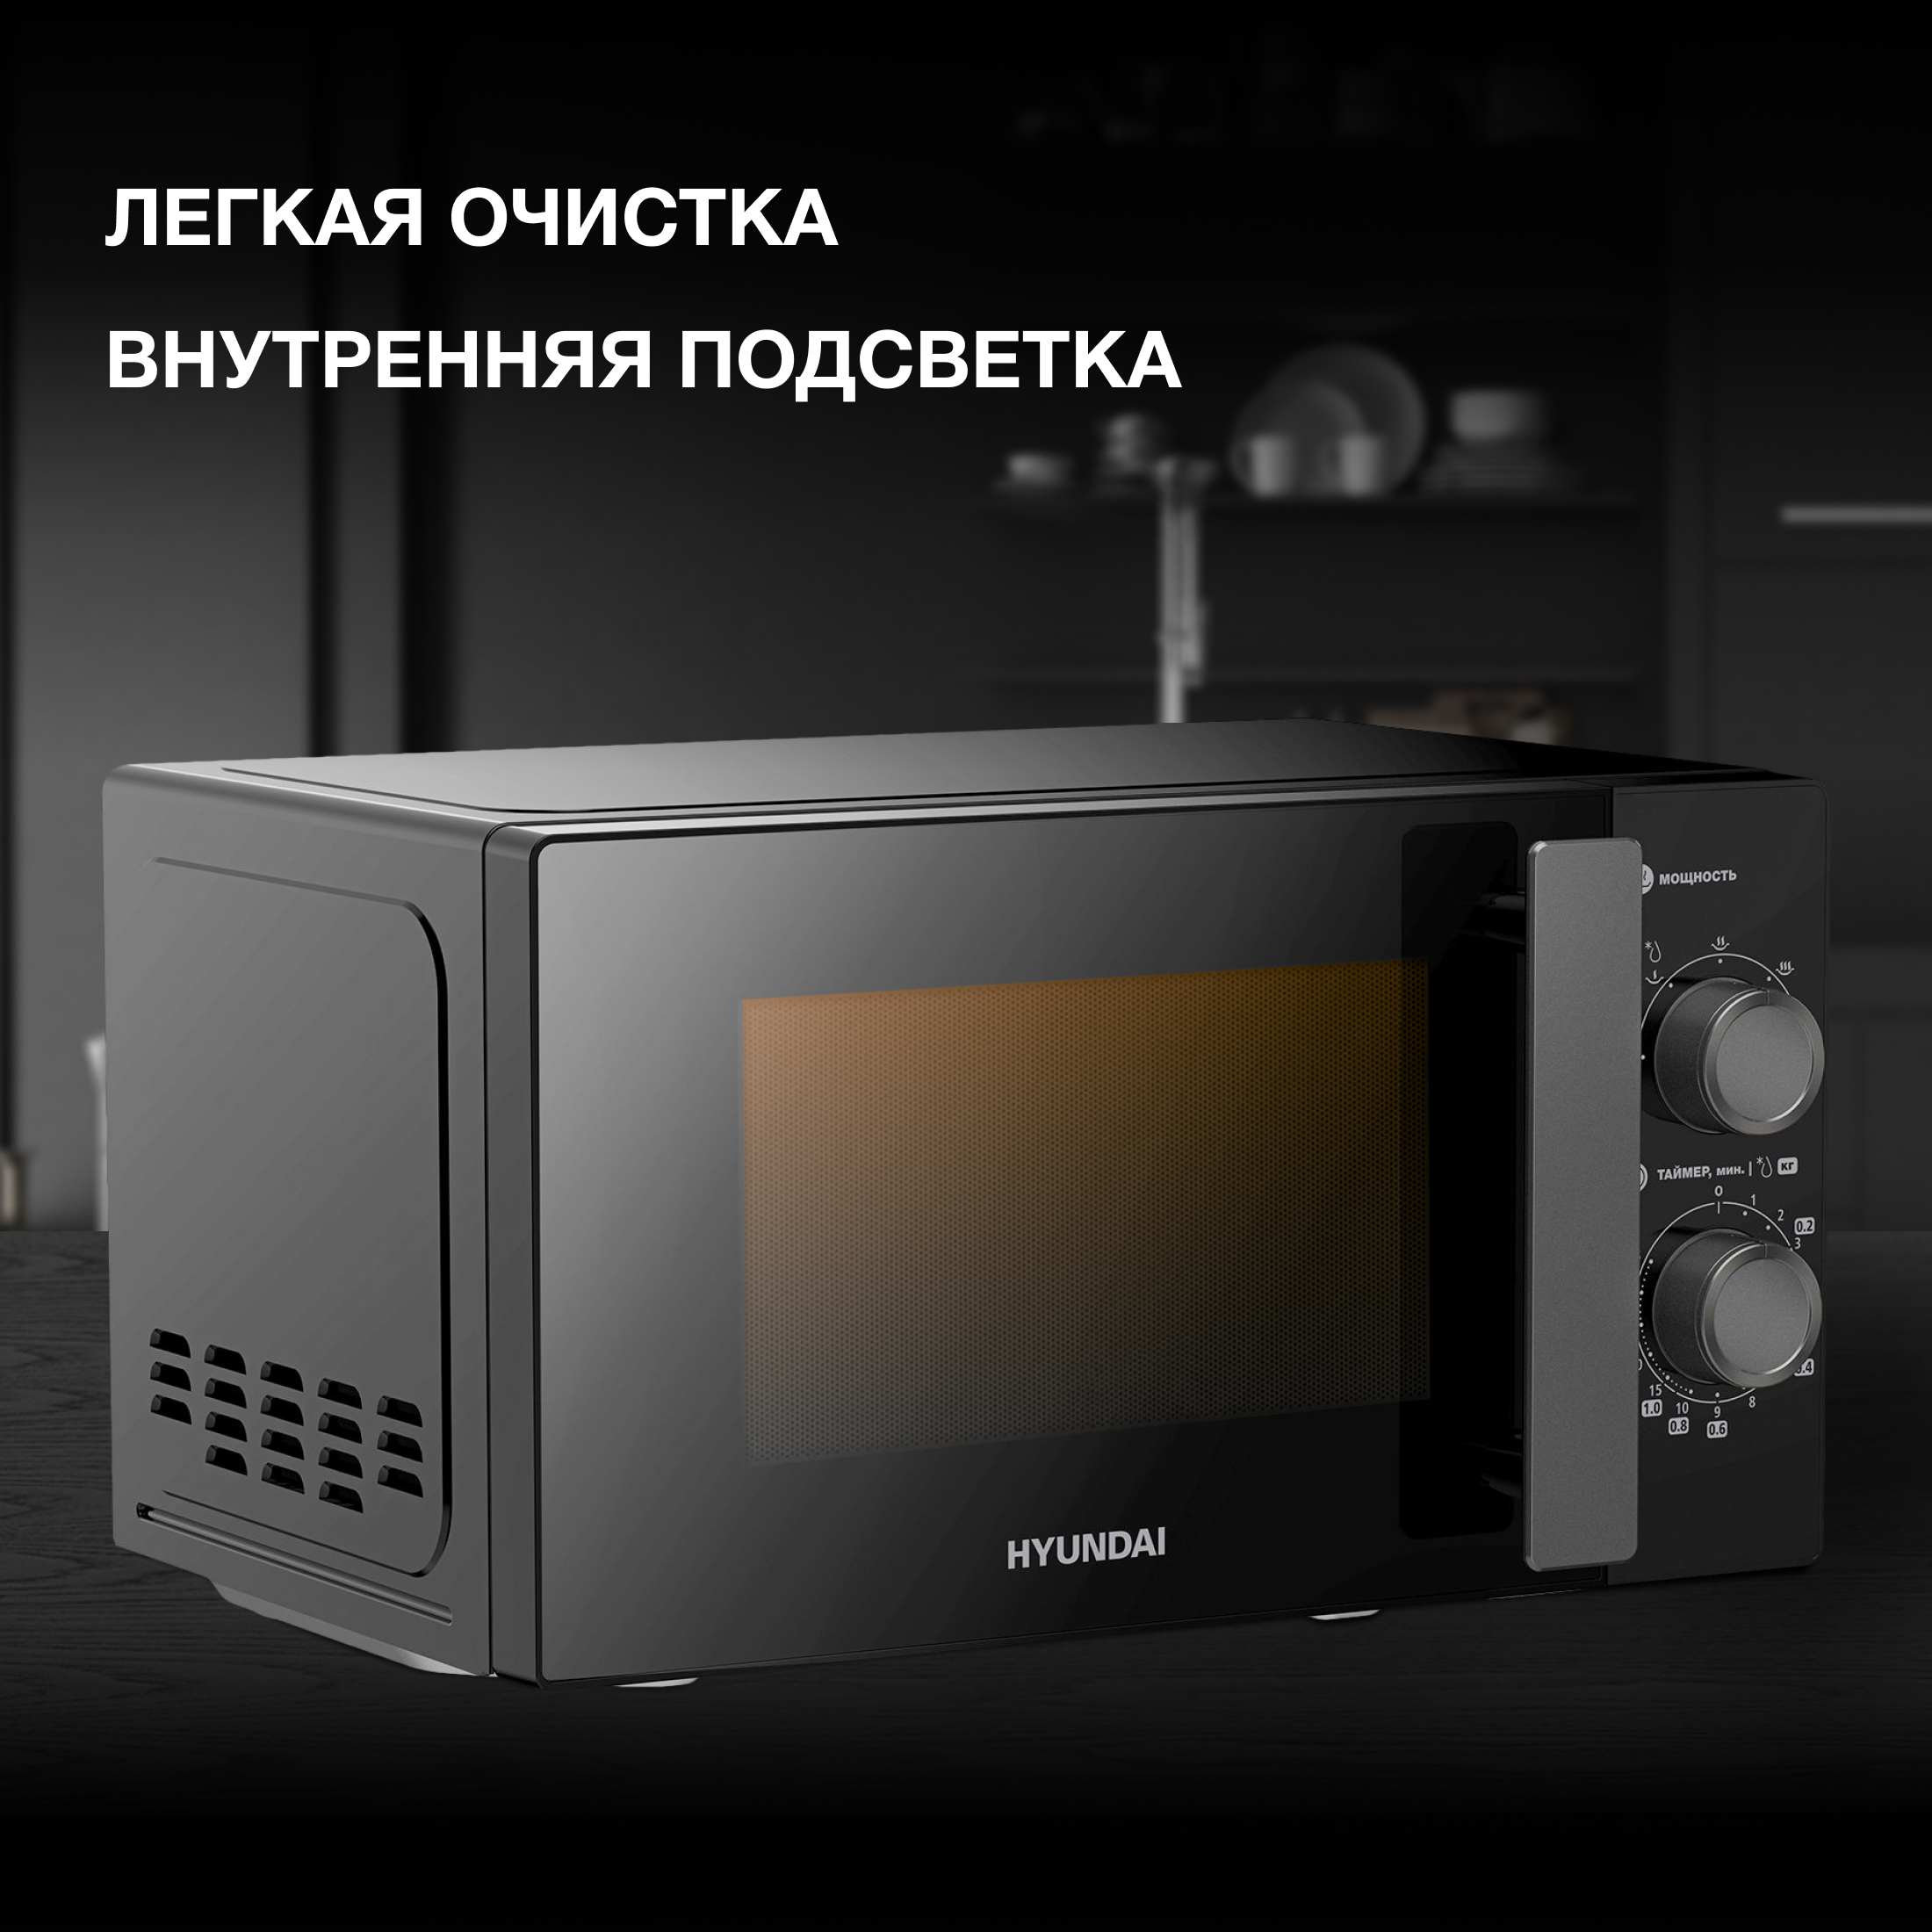 Микроволновая печь соло HYUNDAI HYM-M2091 черный микроволновая печь соло hyundai hym d3001